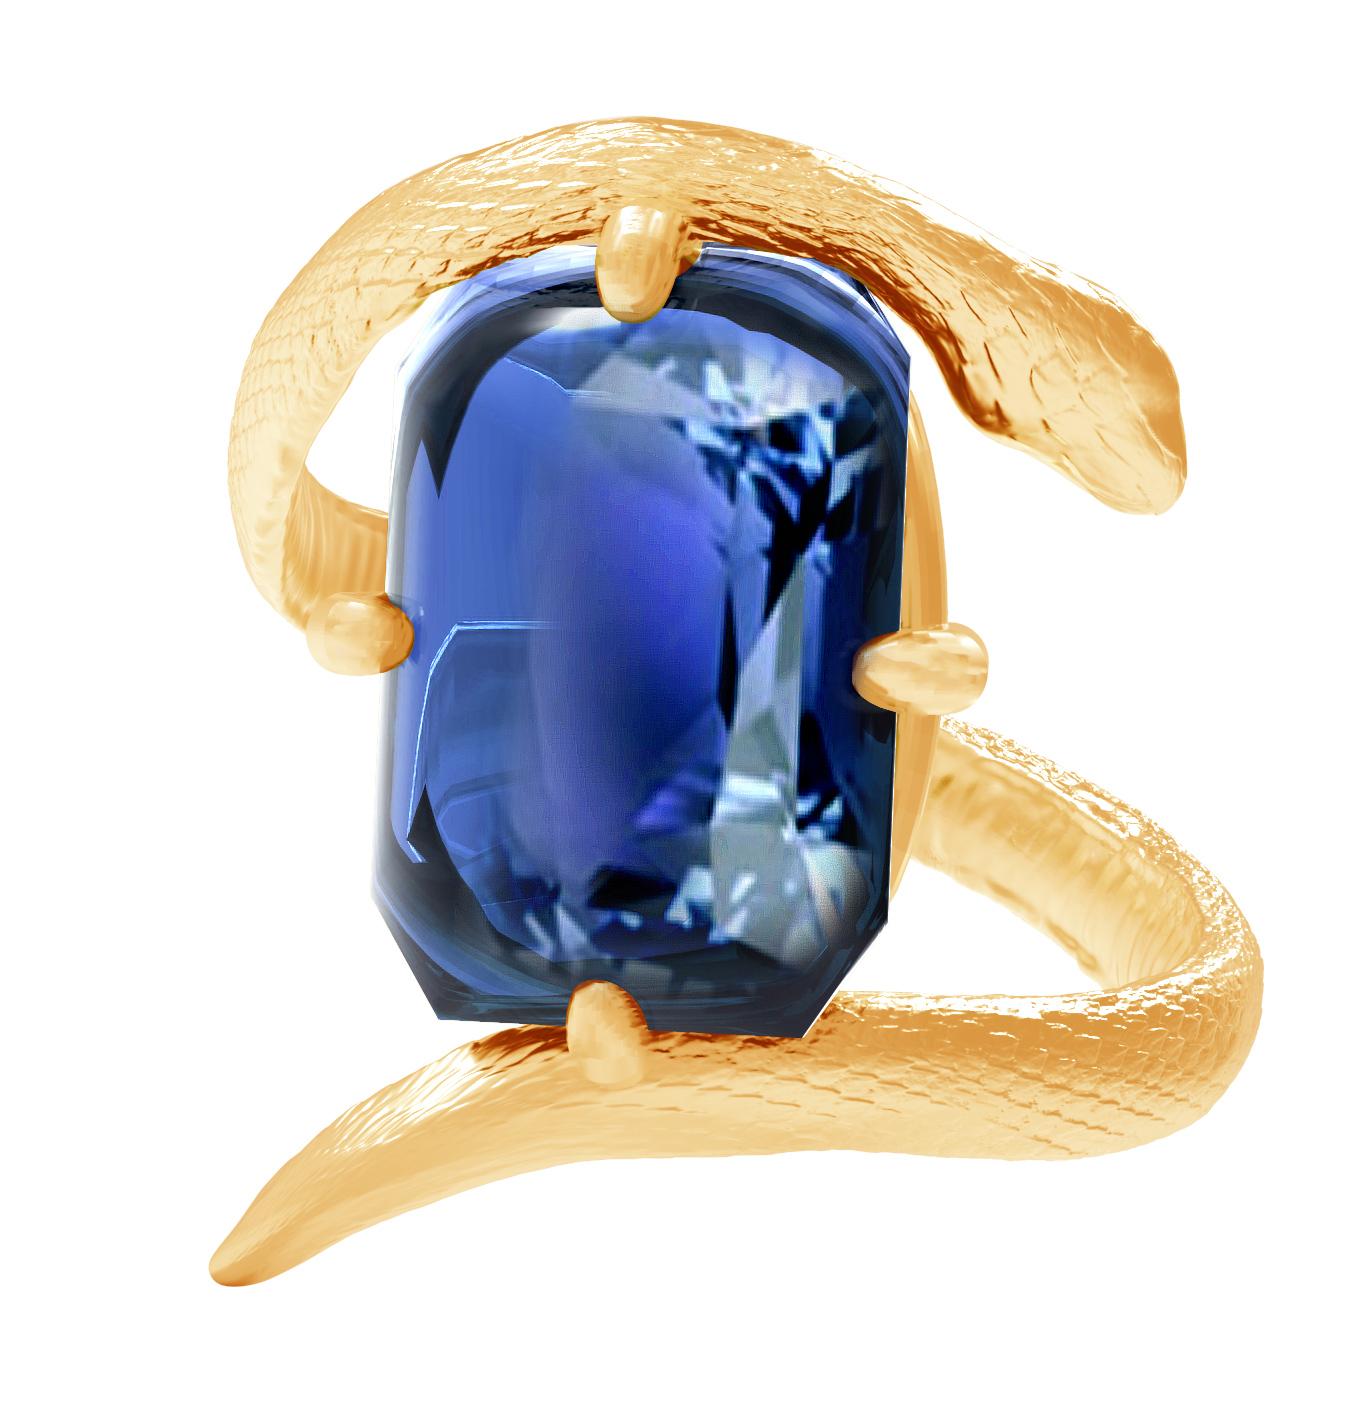 Dieser zeitgenössische ägyptische Revival-Ring ist aus 18 Karat Gelbgold mit einem natürlichen, ungeheizten, vom französischen Gemischten Laboratorium zertifizierten blauen Saphir von 7,54 Karat, 11,16x10,7x6,42 mm, Kissenschliff. Es gehört zur